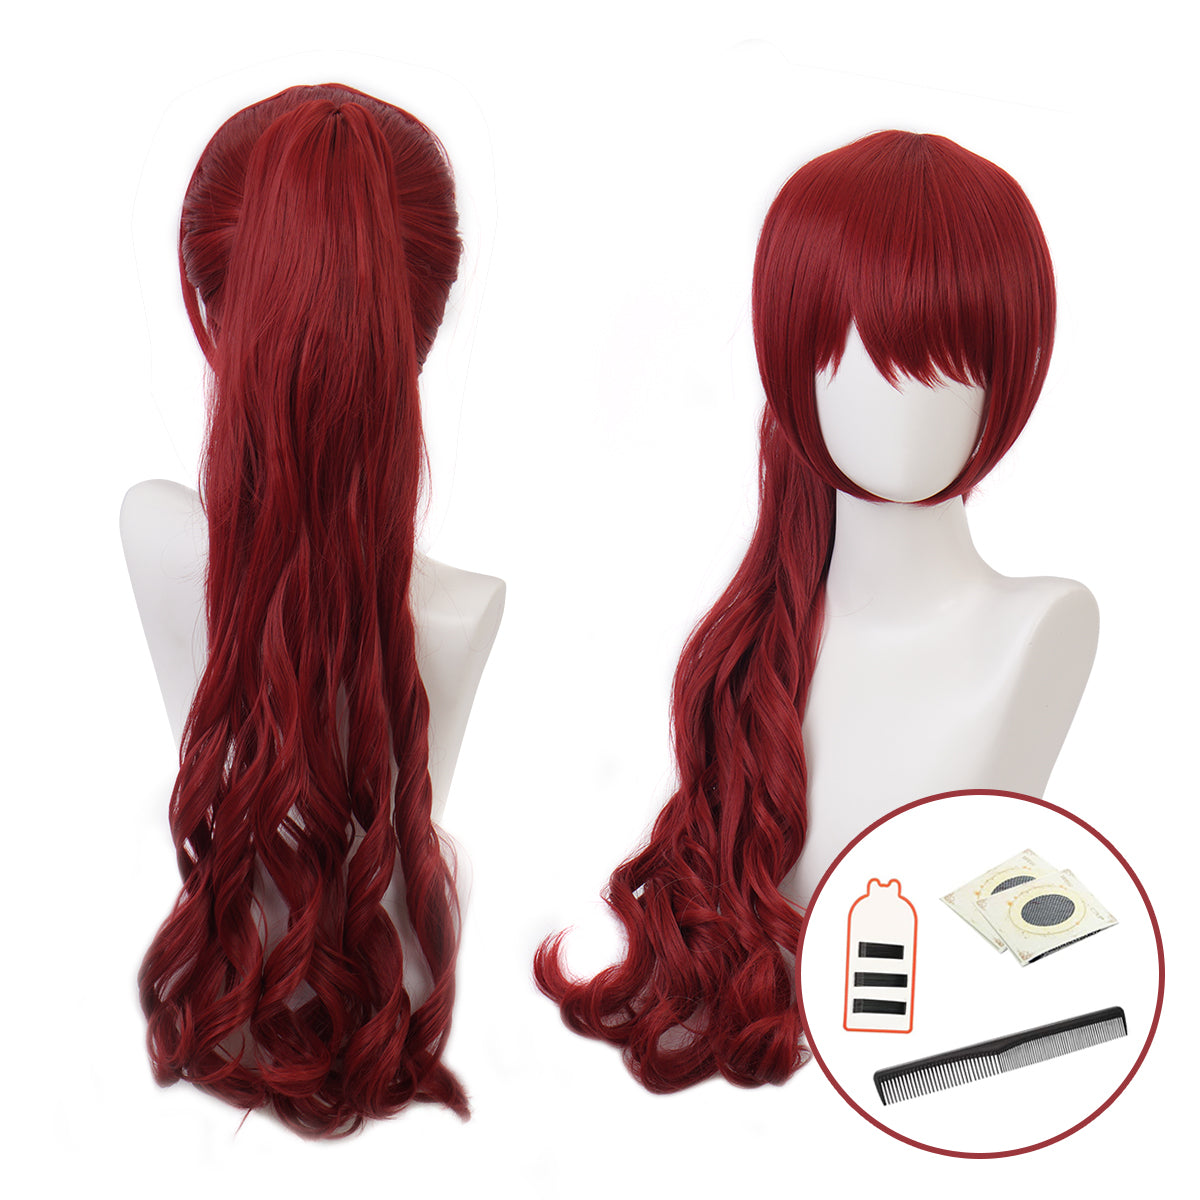 HOLOUN PS 5 Game Kasumi Yoshizawa Cosplay Wig Rose Net Synthetic Fiber Adjustable Size Heat Resistant Cap Comb